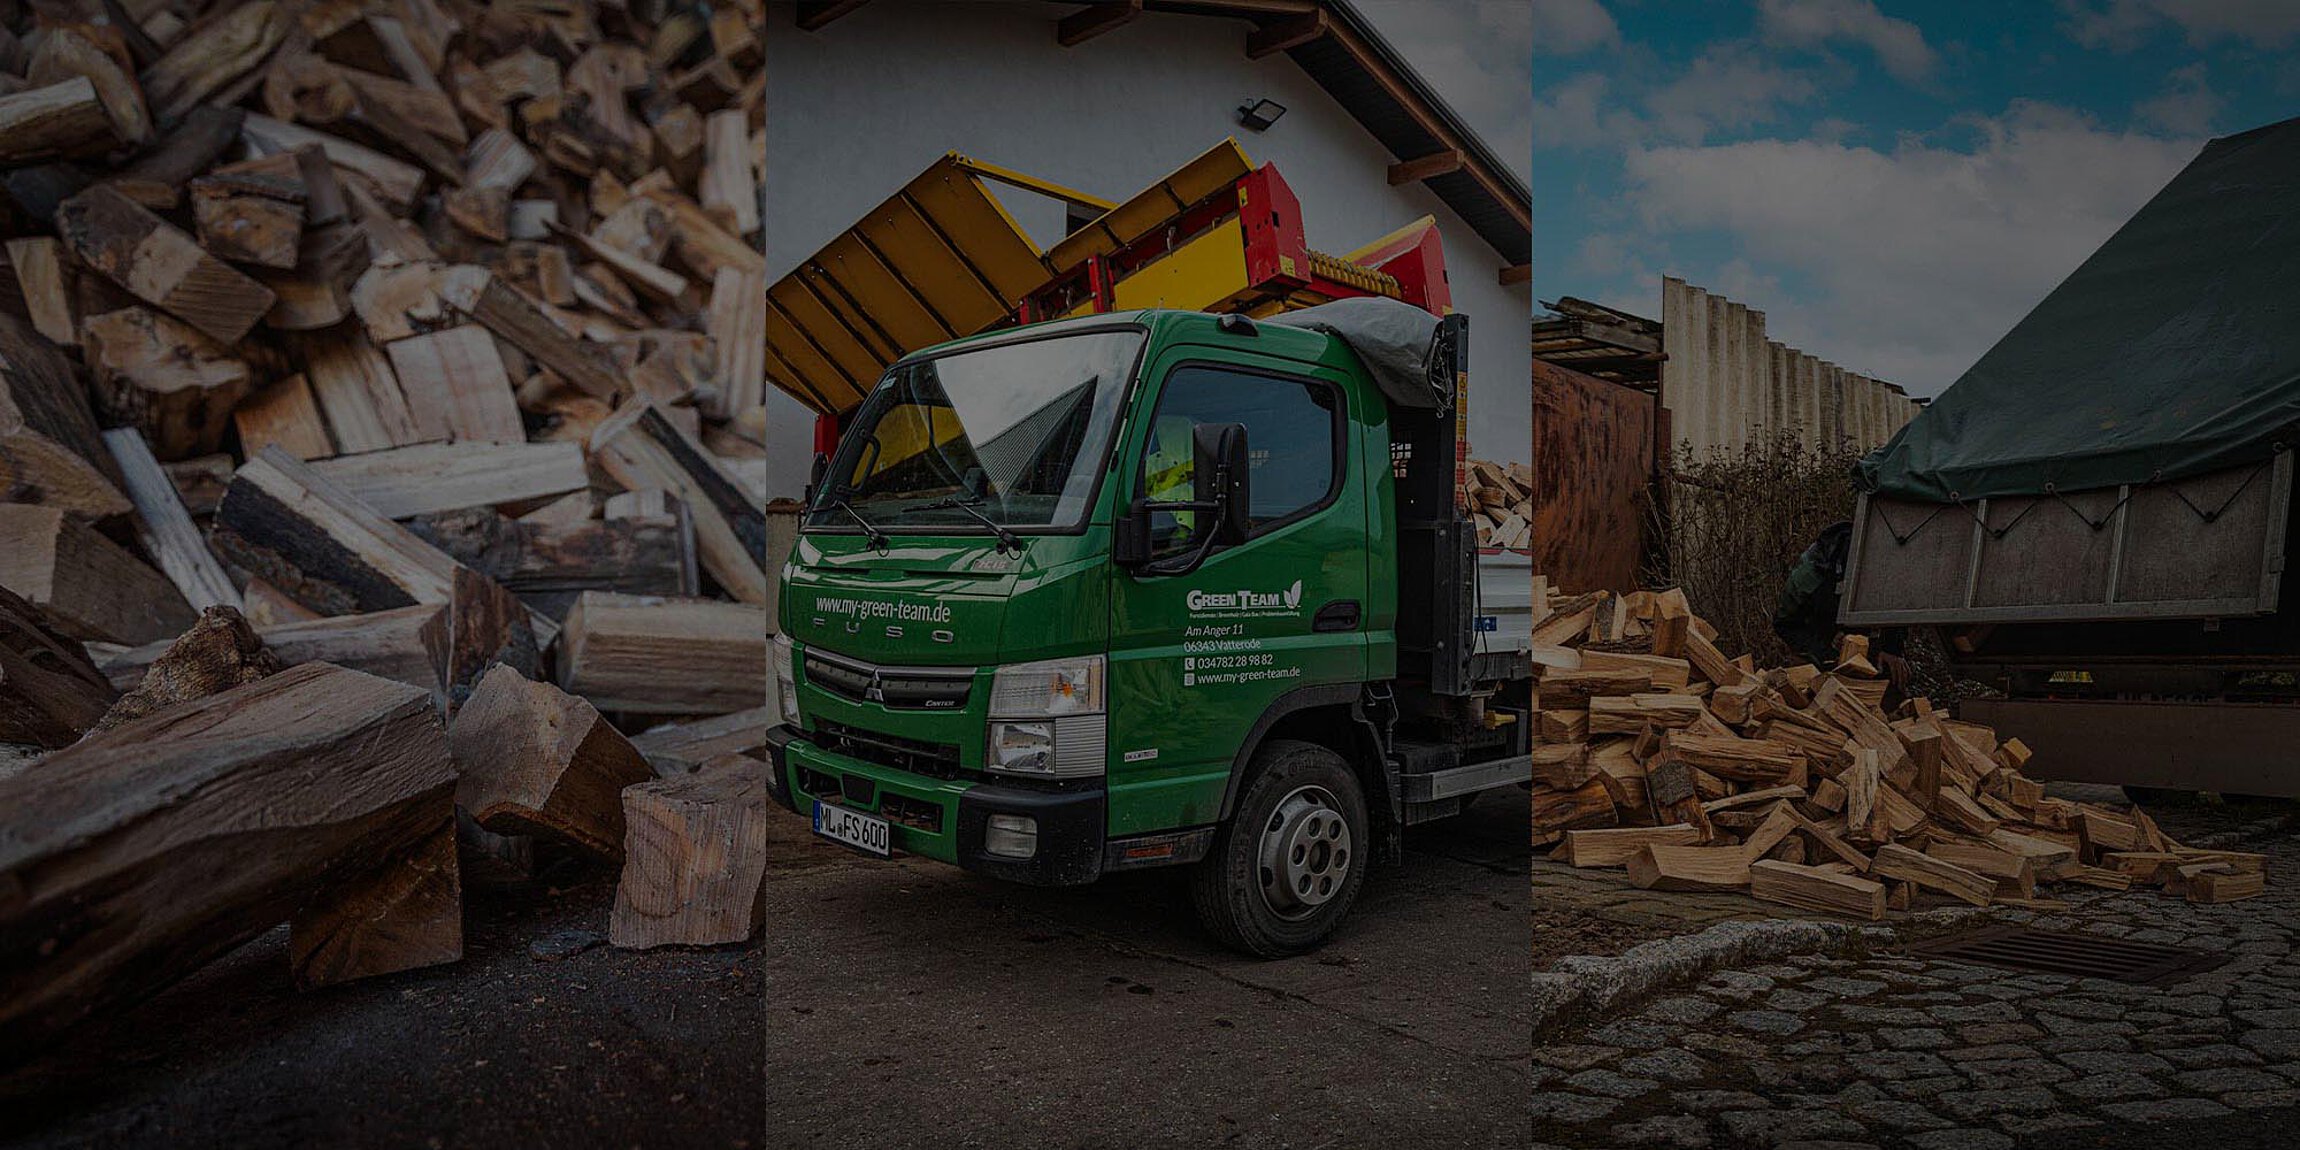 Brennholzbild, LKW für Brennholzlieferung und Brennholz abladen